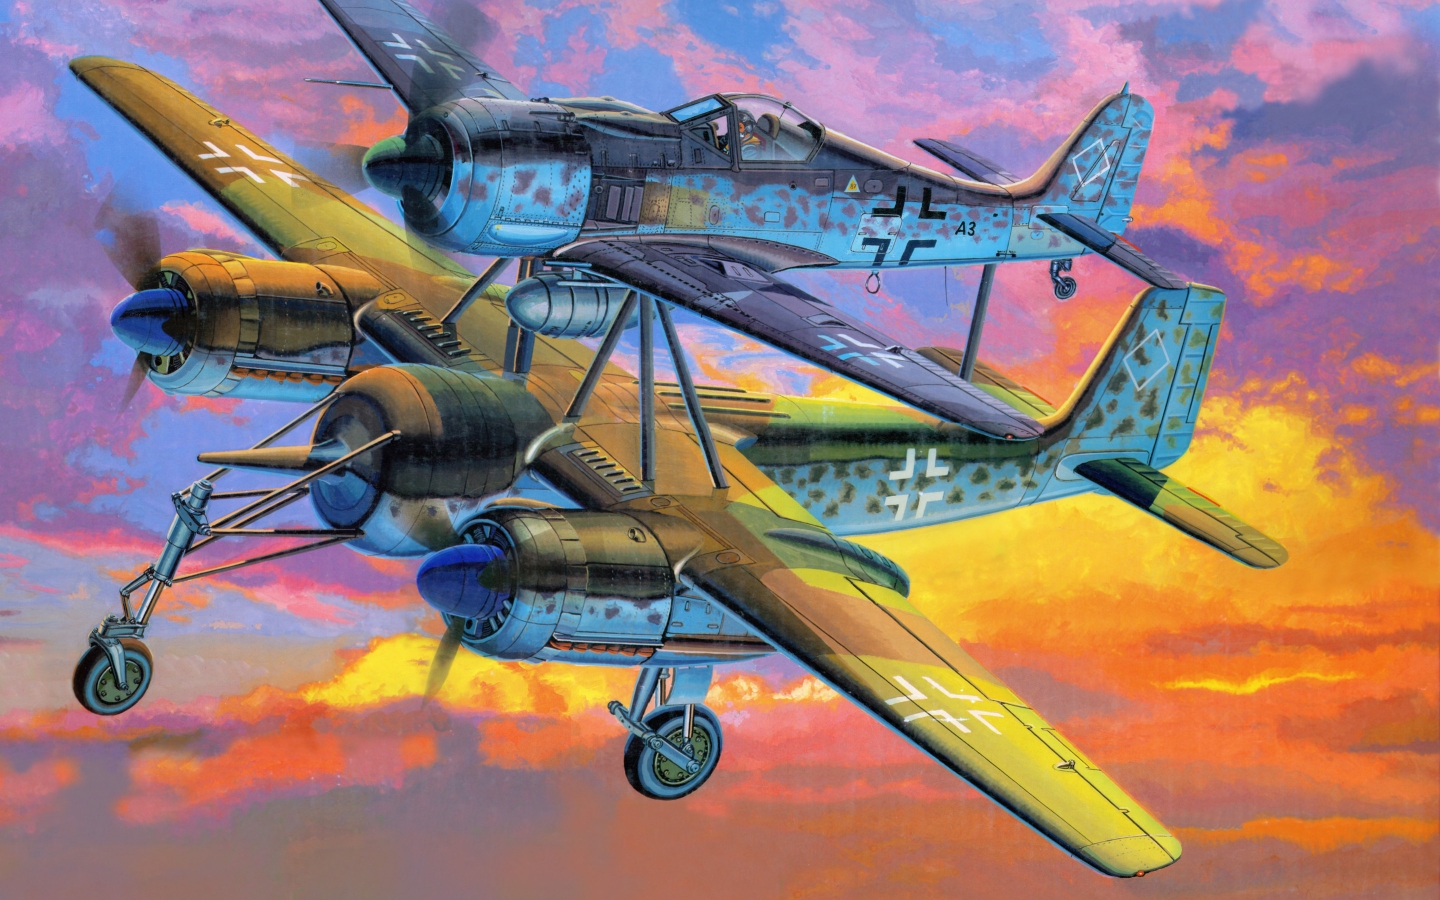 Focke Wulf Fw 190 Mistel for 1440 x 900 widescreen resolution